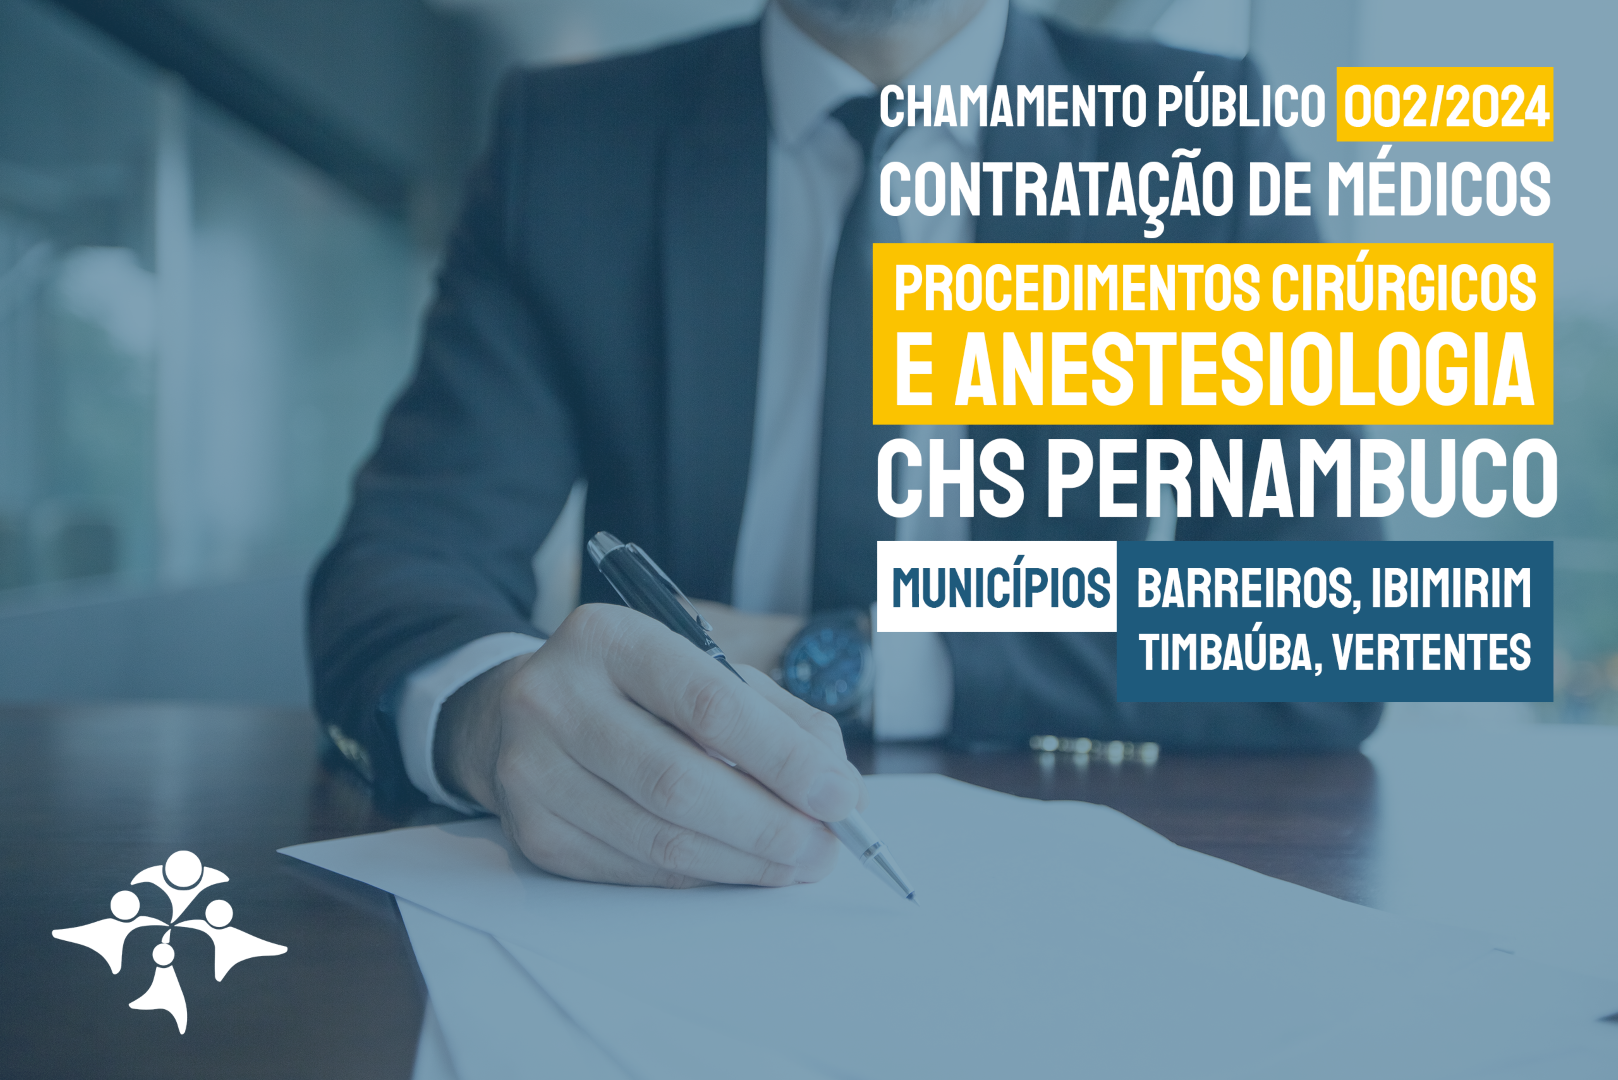 Chamamento Público 002/2024 – Contratação de Médicos – CHS Pernambuco (Barreiros, Ibimirim, Timbaúba, Vertentes)